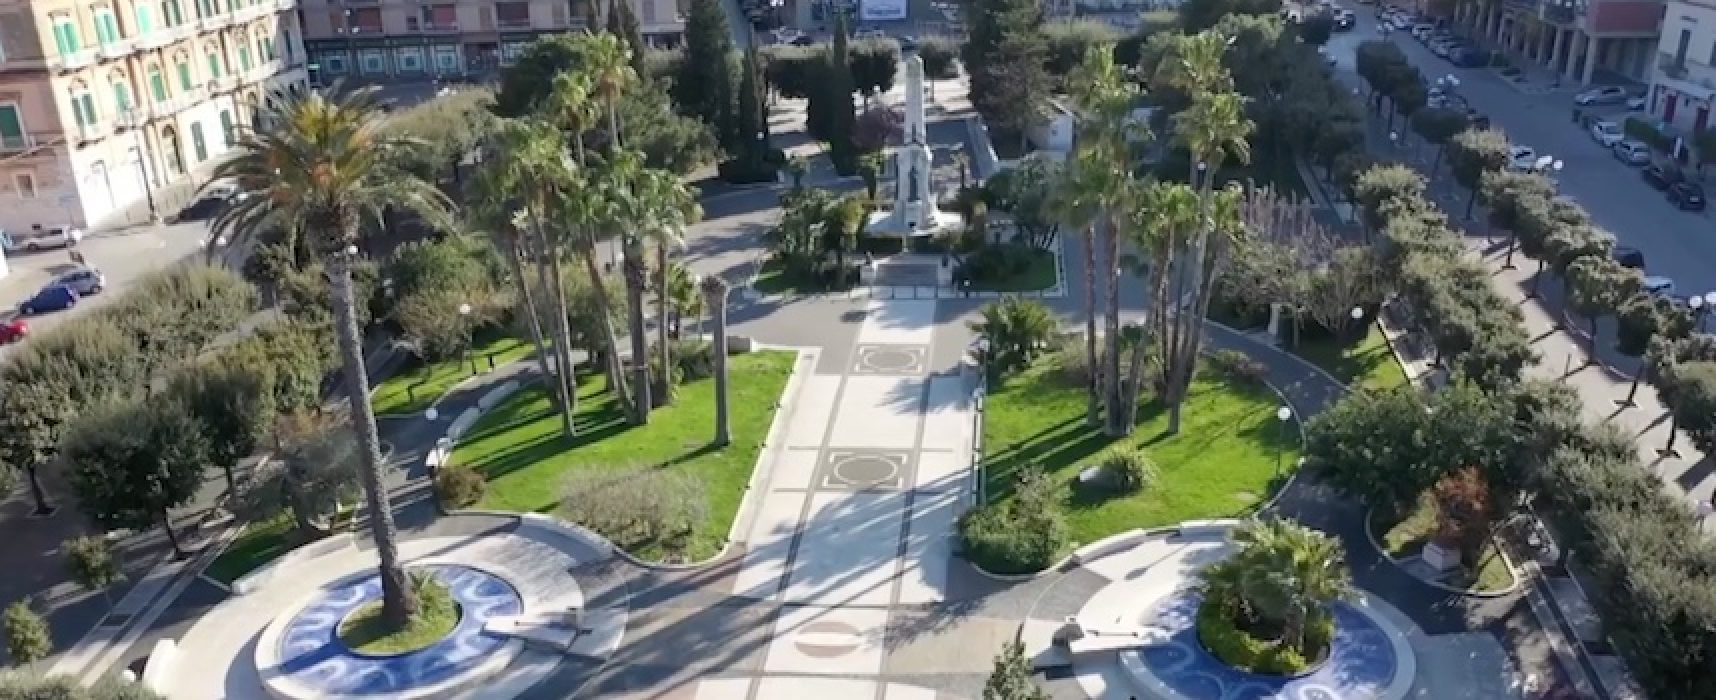 Partono i controlli dall’alto: le immagini del drone su una Bisceglie deserta / VIDEO